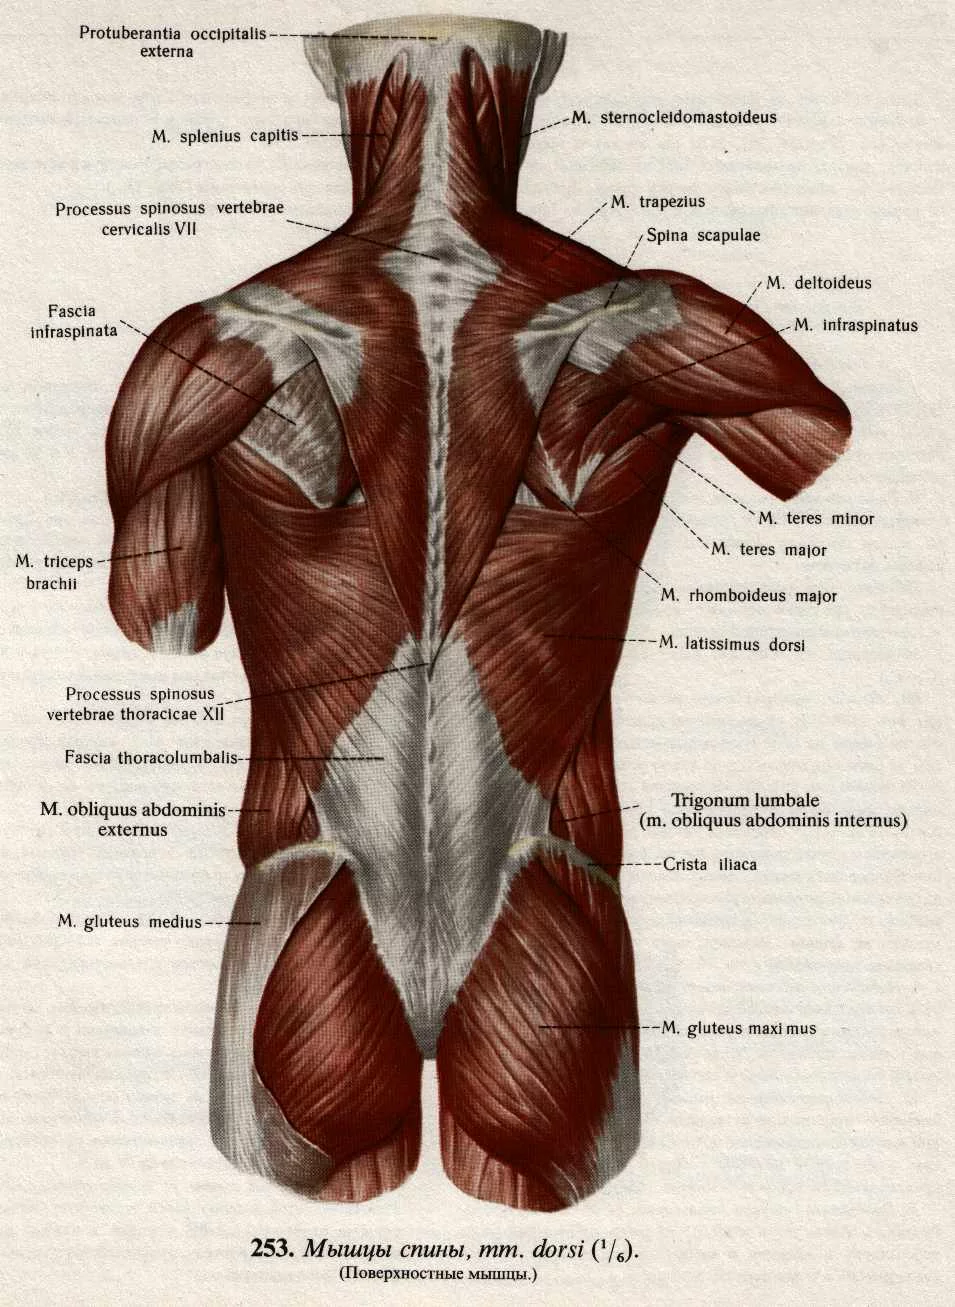 Анатомия мышц спины: строение и функции глубоких, поверхностных и широчайшей. таблица положения